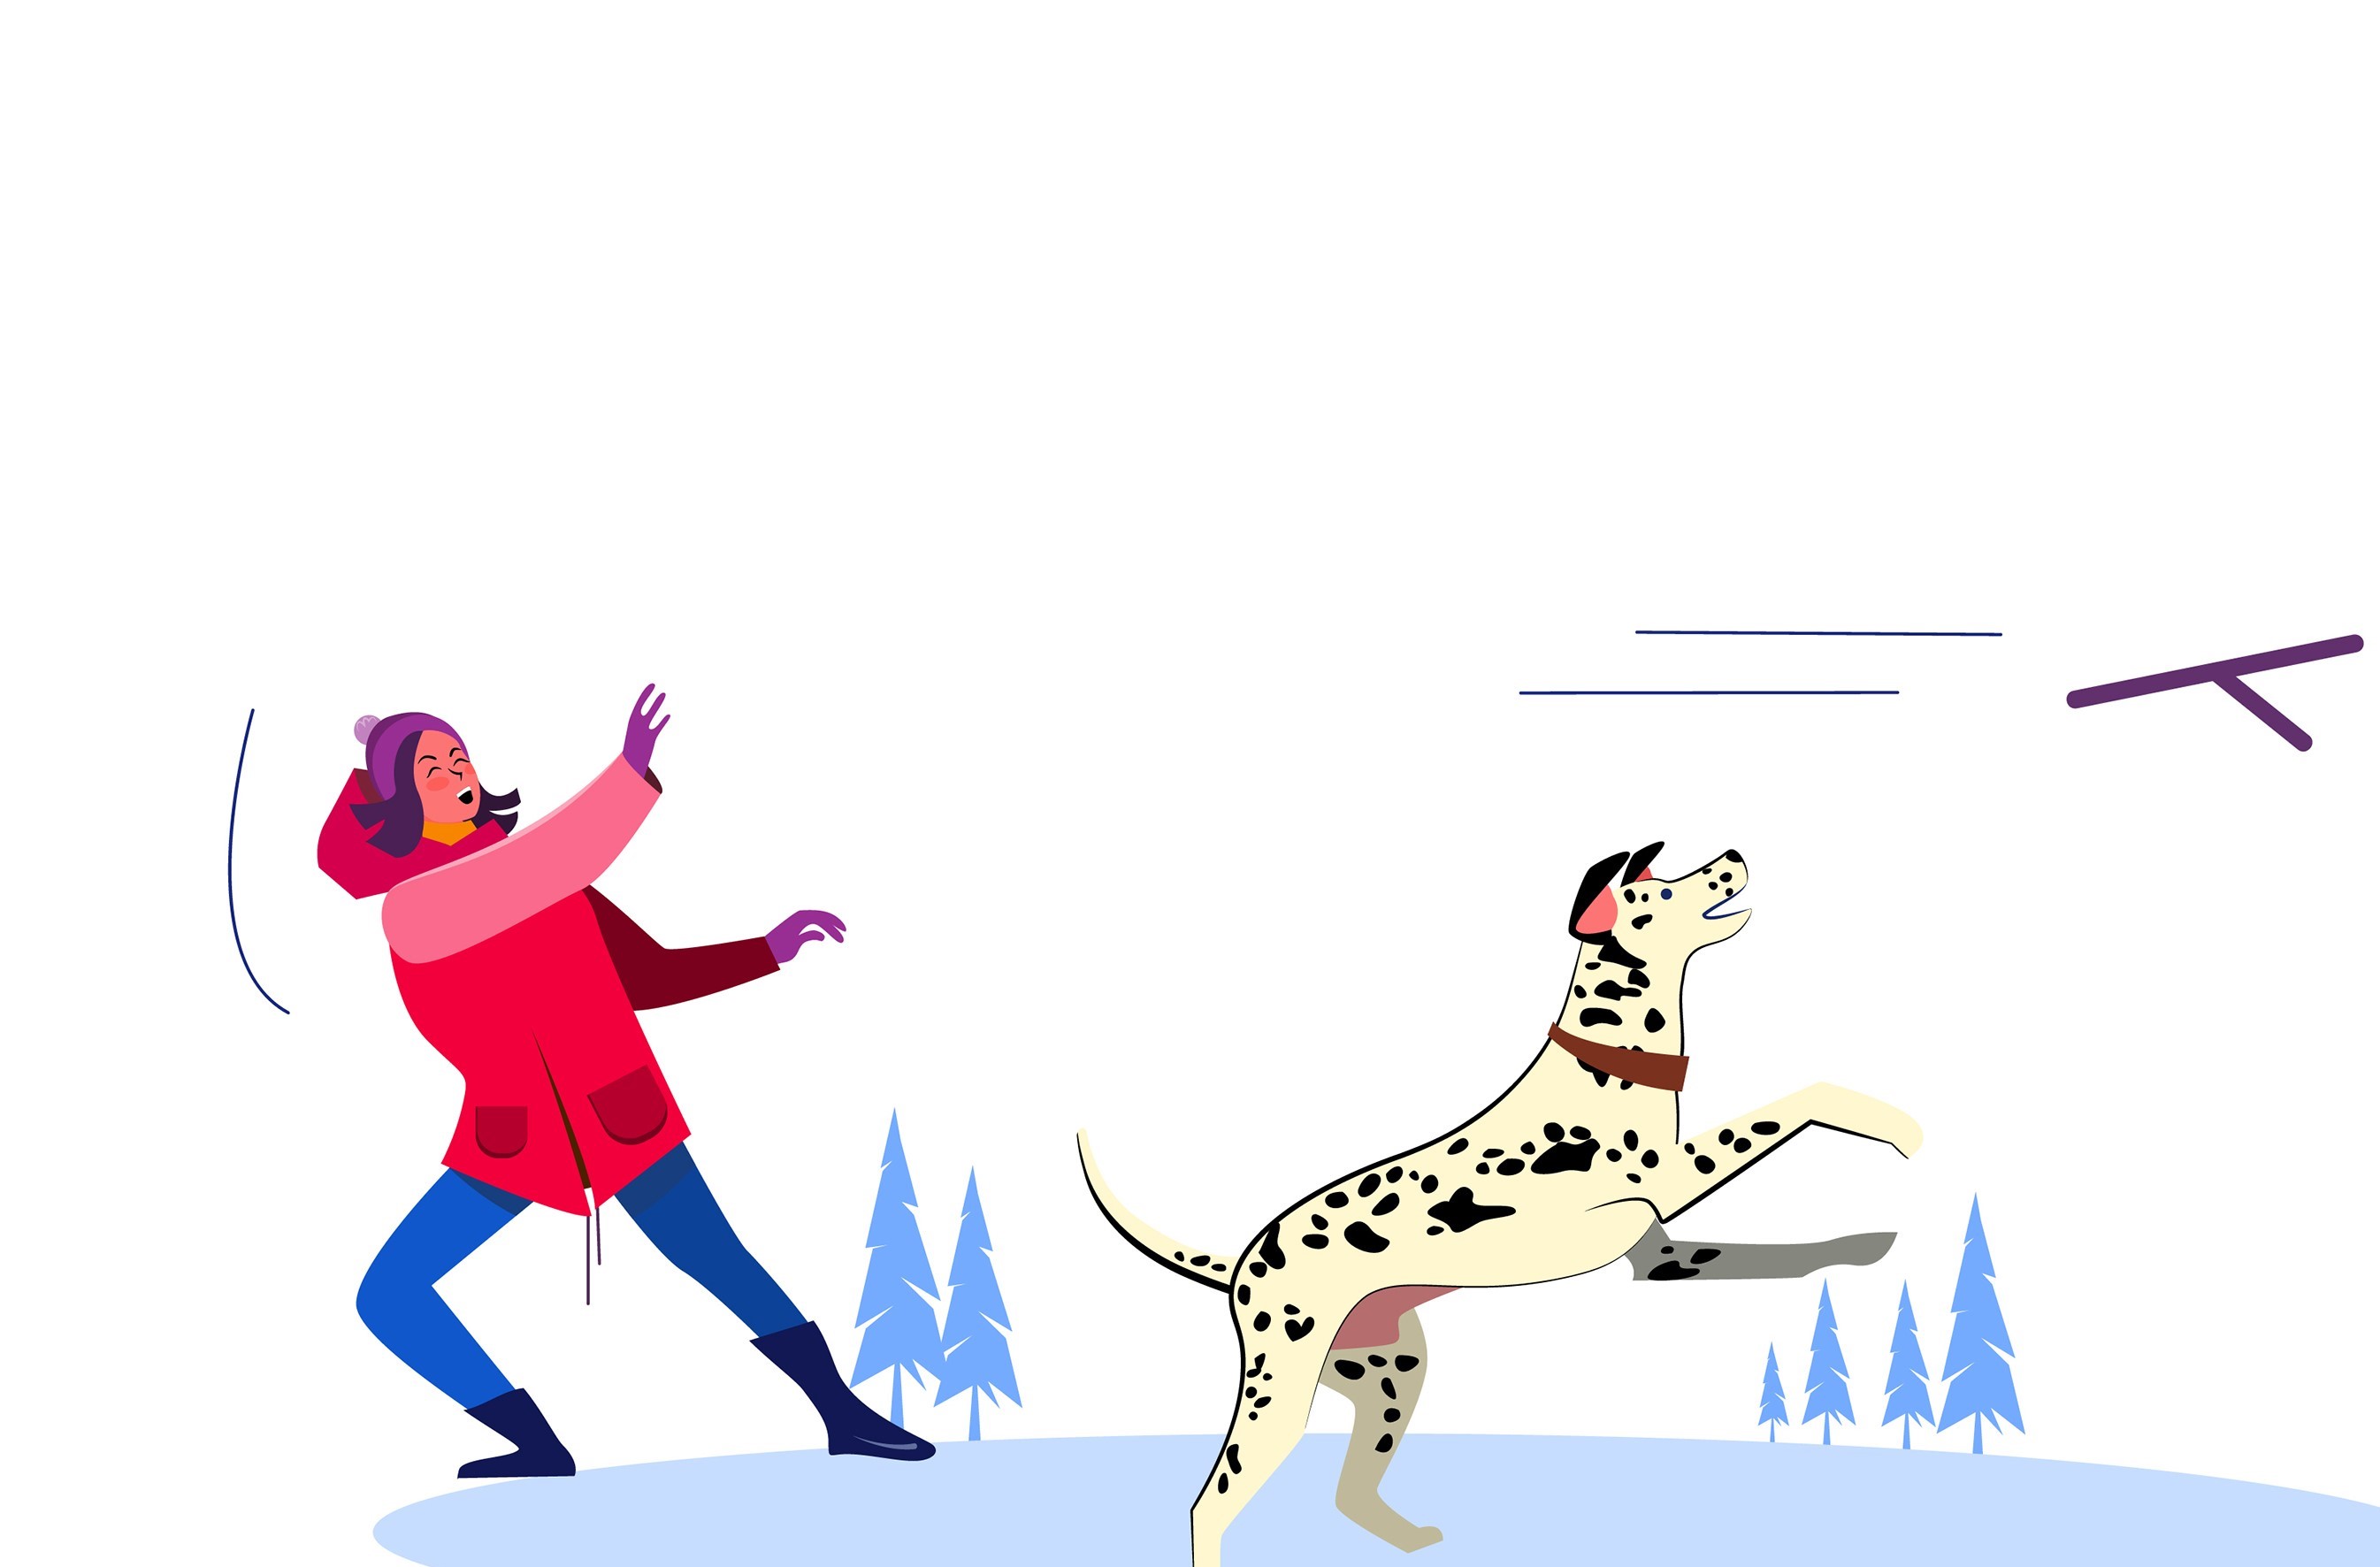 Ilustracija prikazuje djevojku i psa kako se igraju.